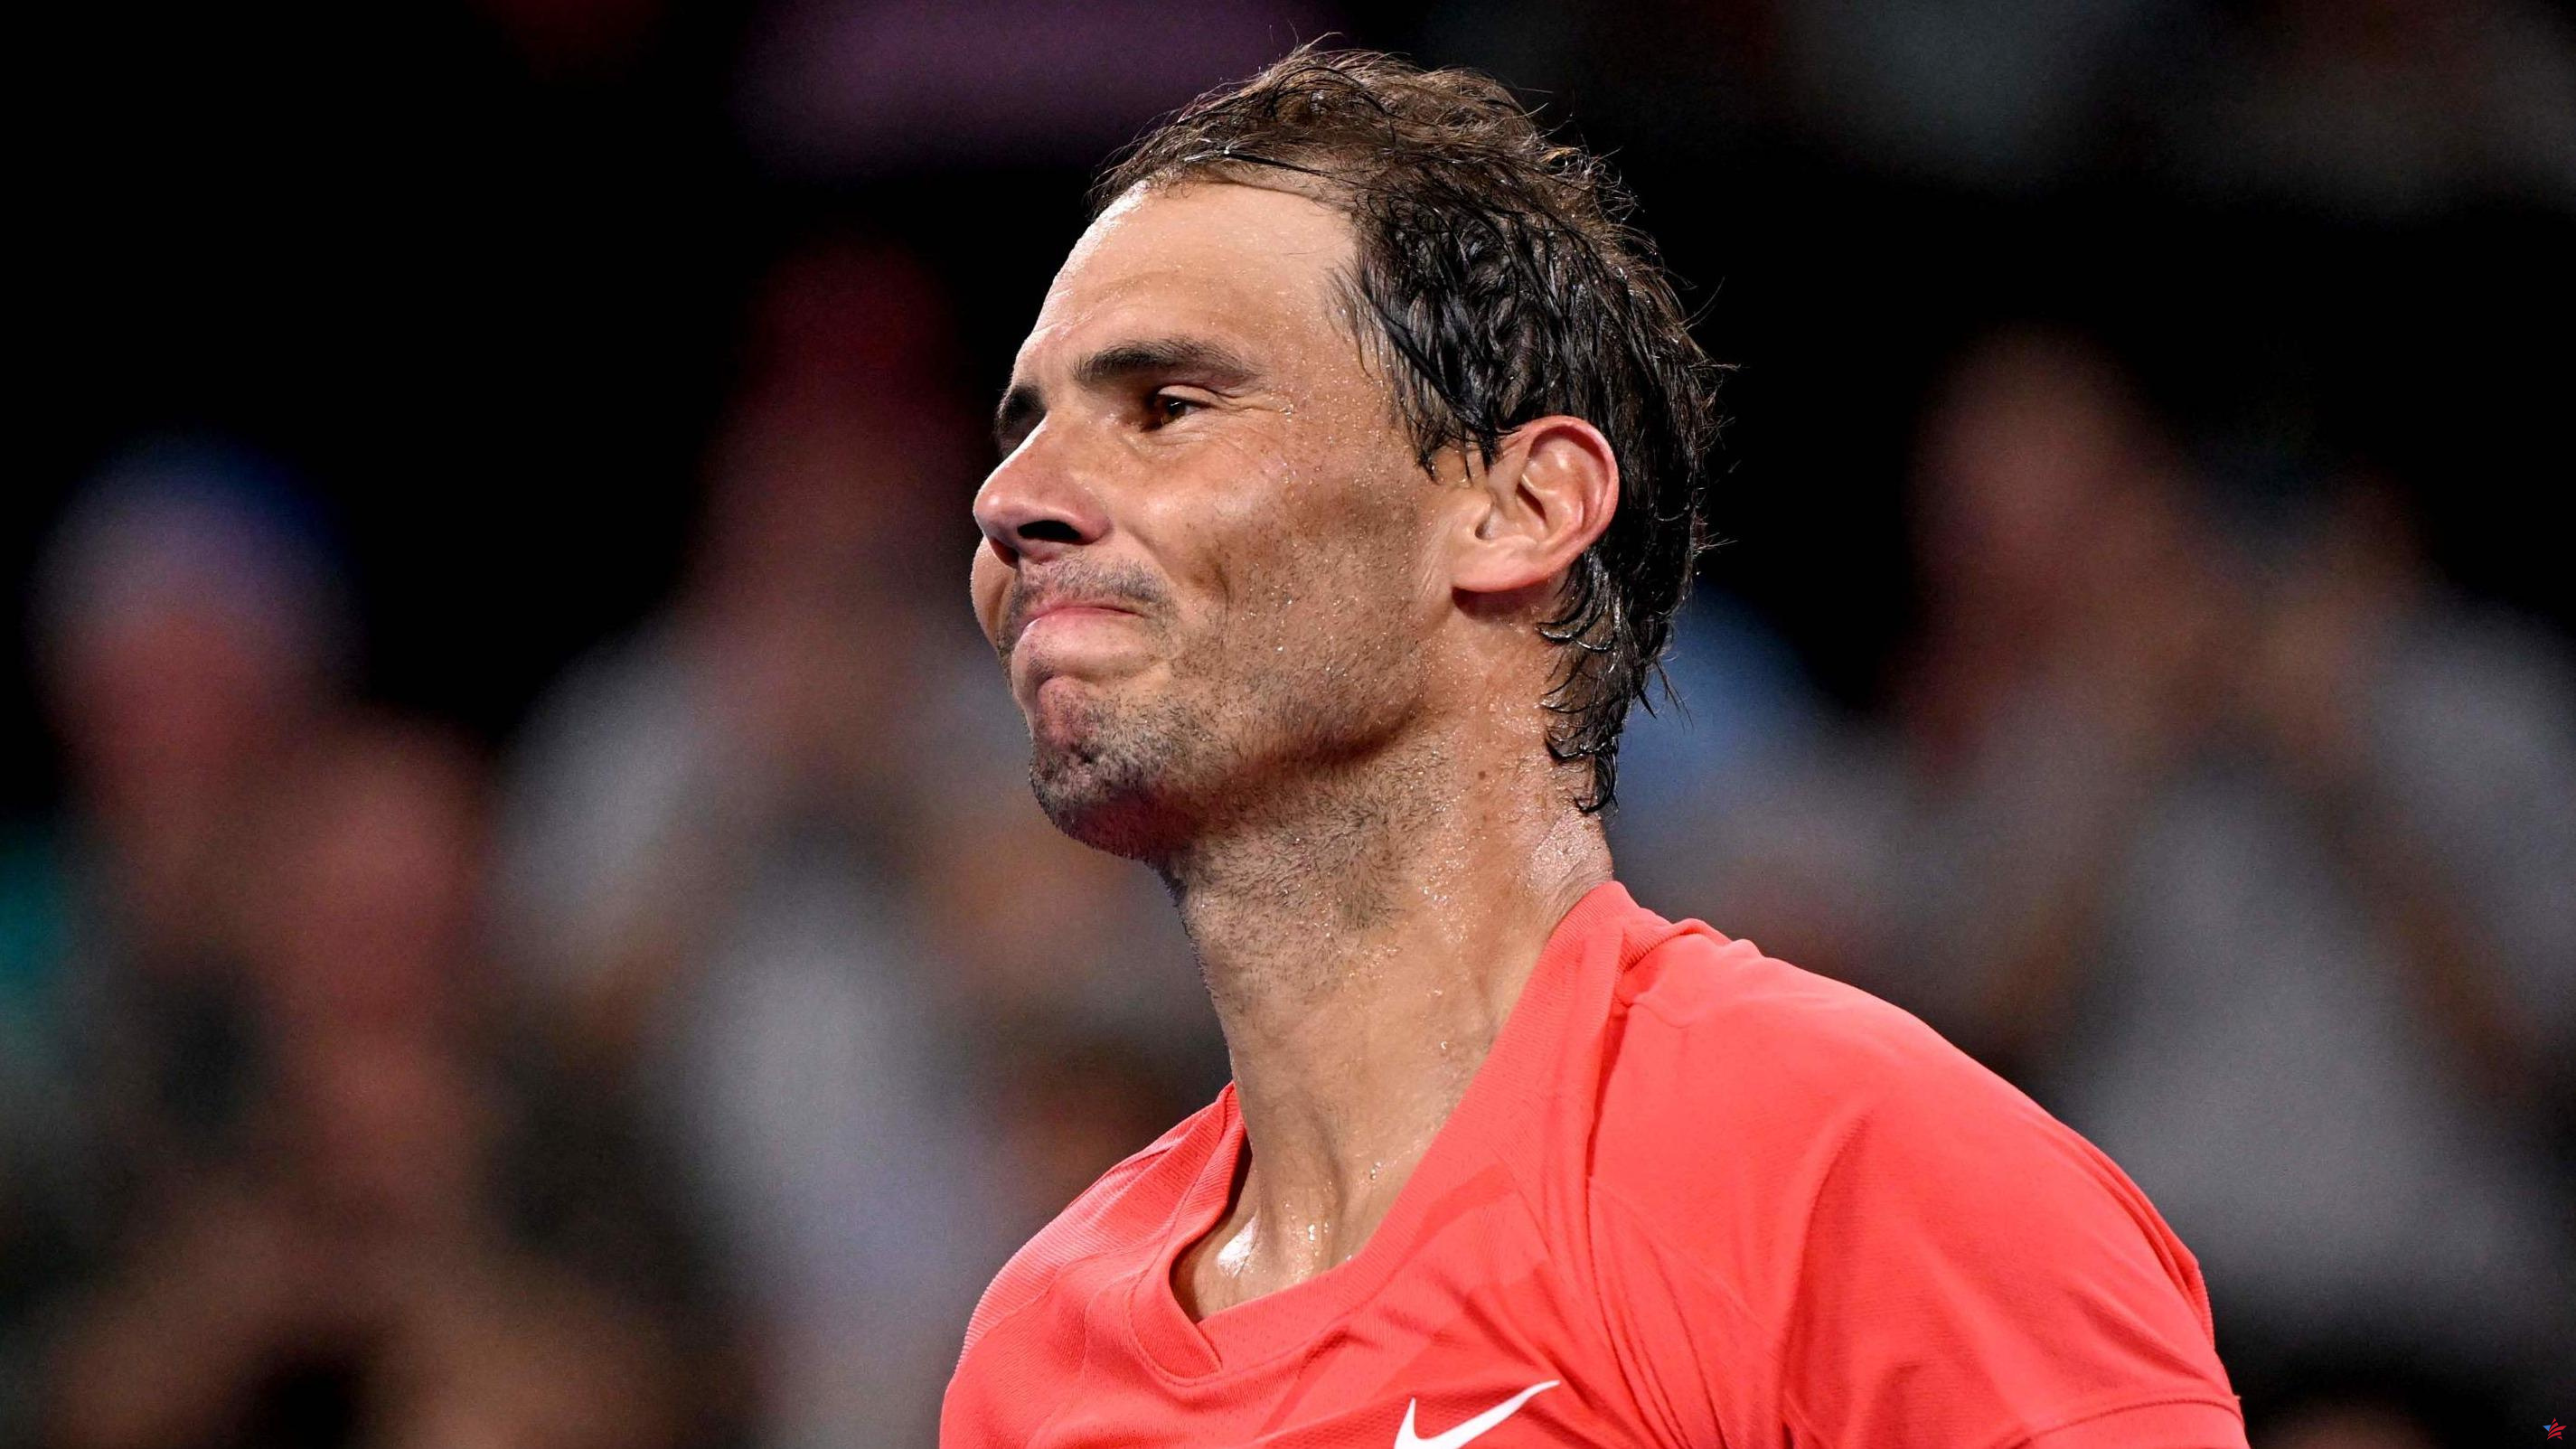 Tenis: lesionado, Rafael Nadal se retira del Abierto de Australia